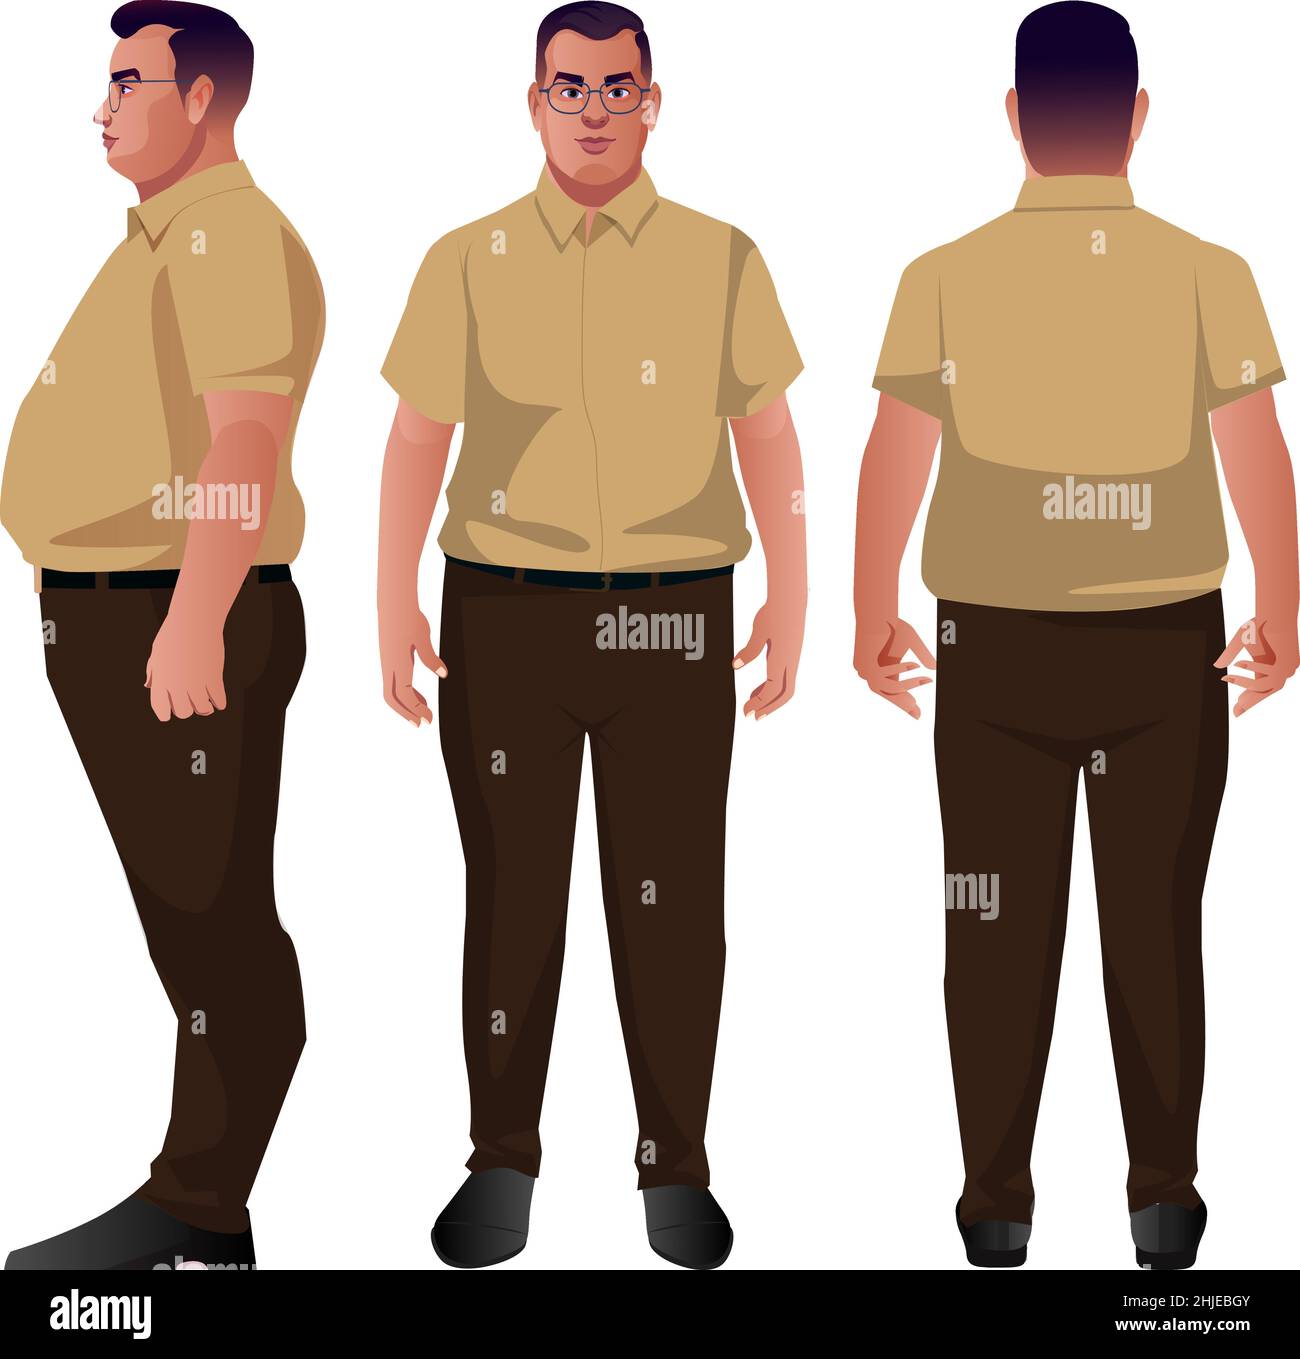 set di fat business uomini vettoriali personaggi design diffrent poses fronte retro e vista laterale vero stile personaggio Illustrazione Vettoriale